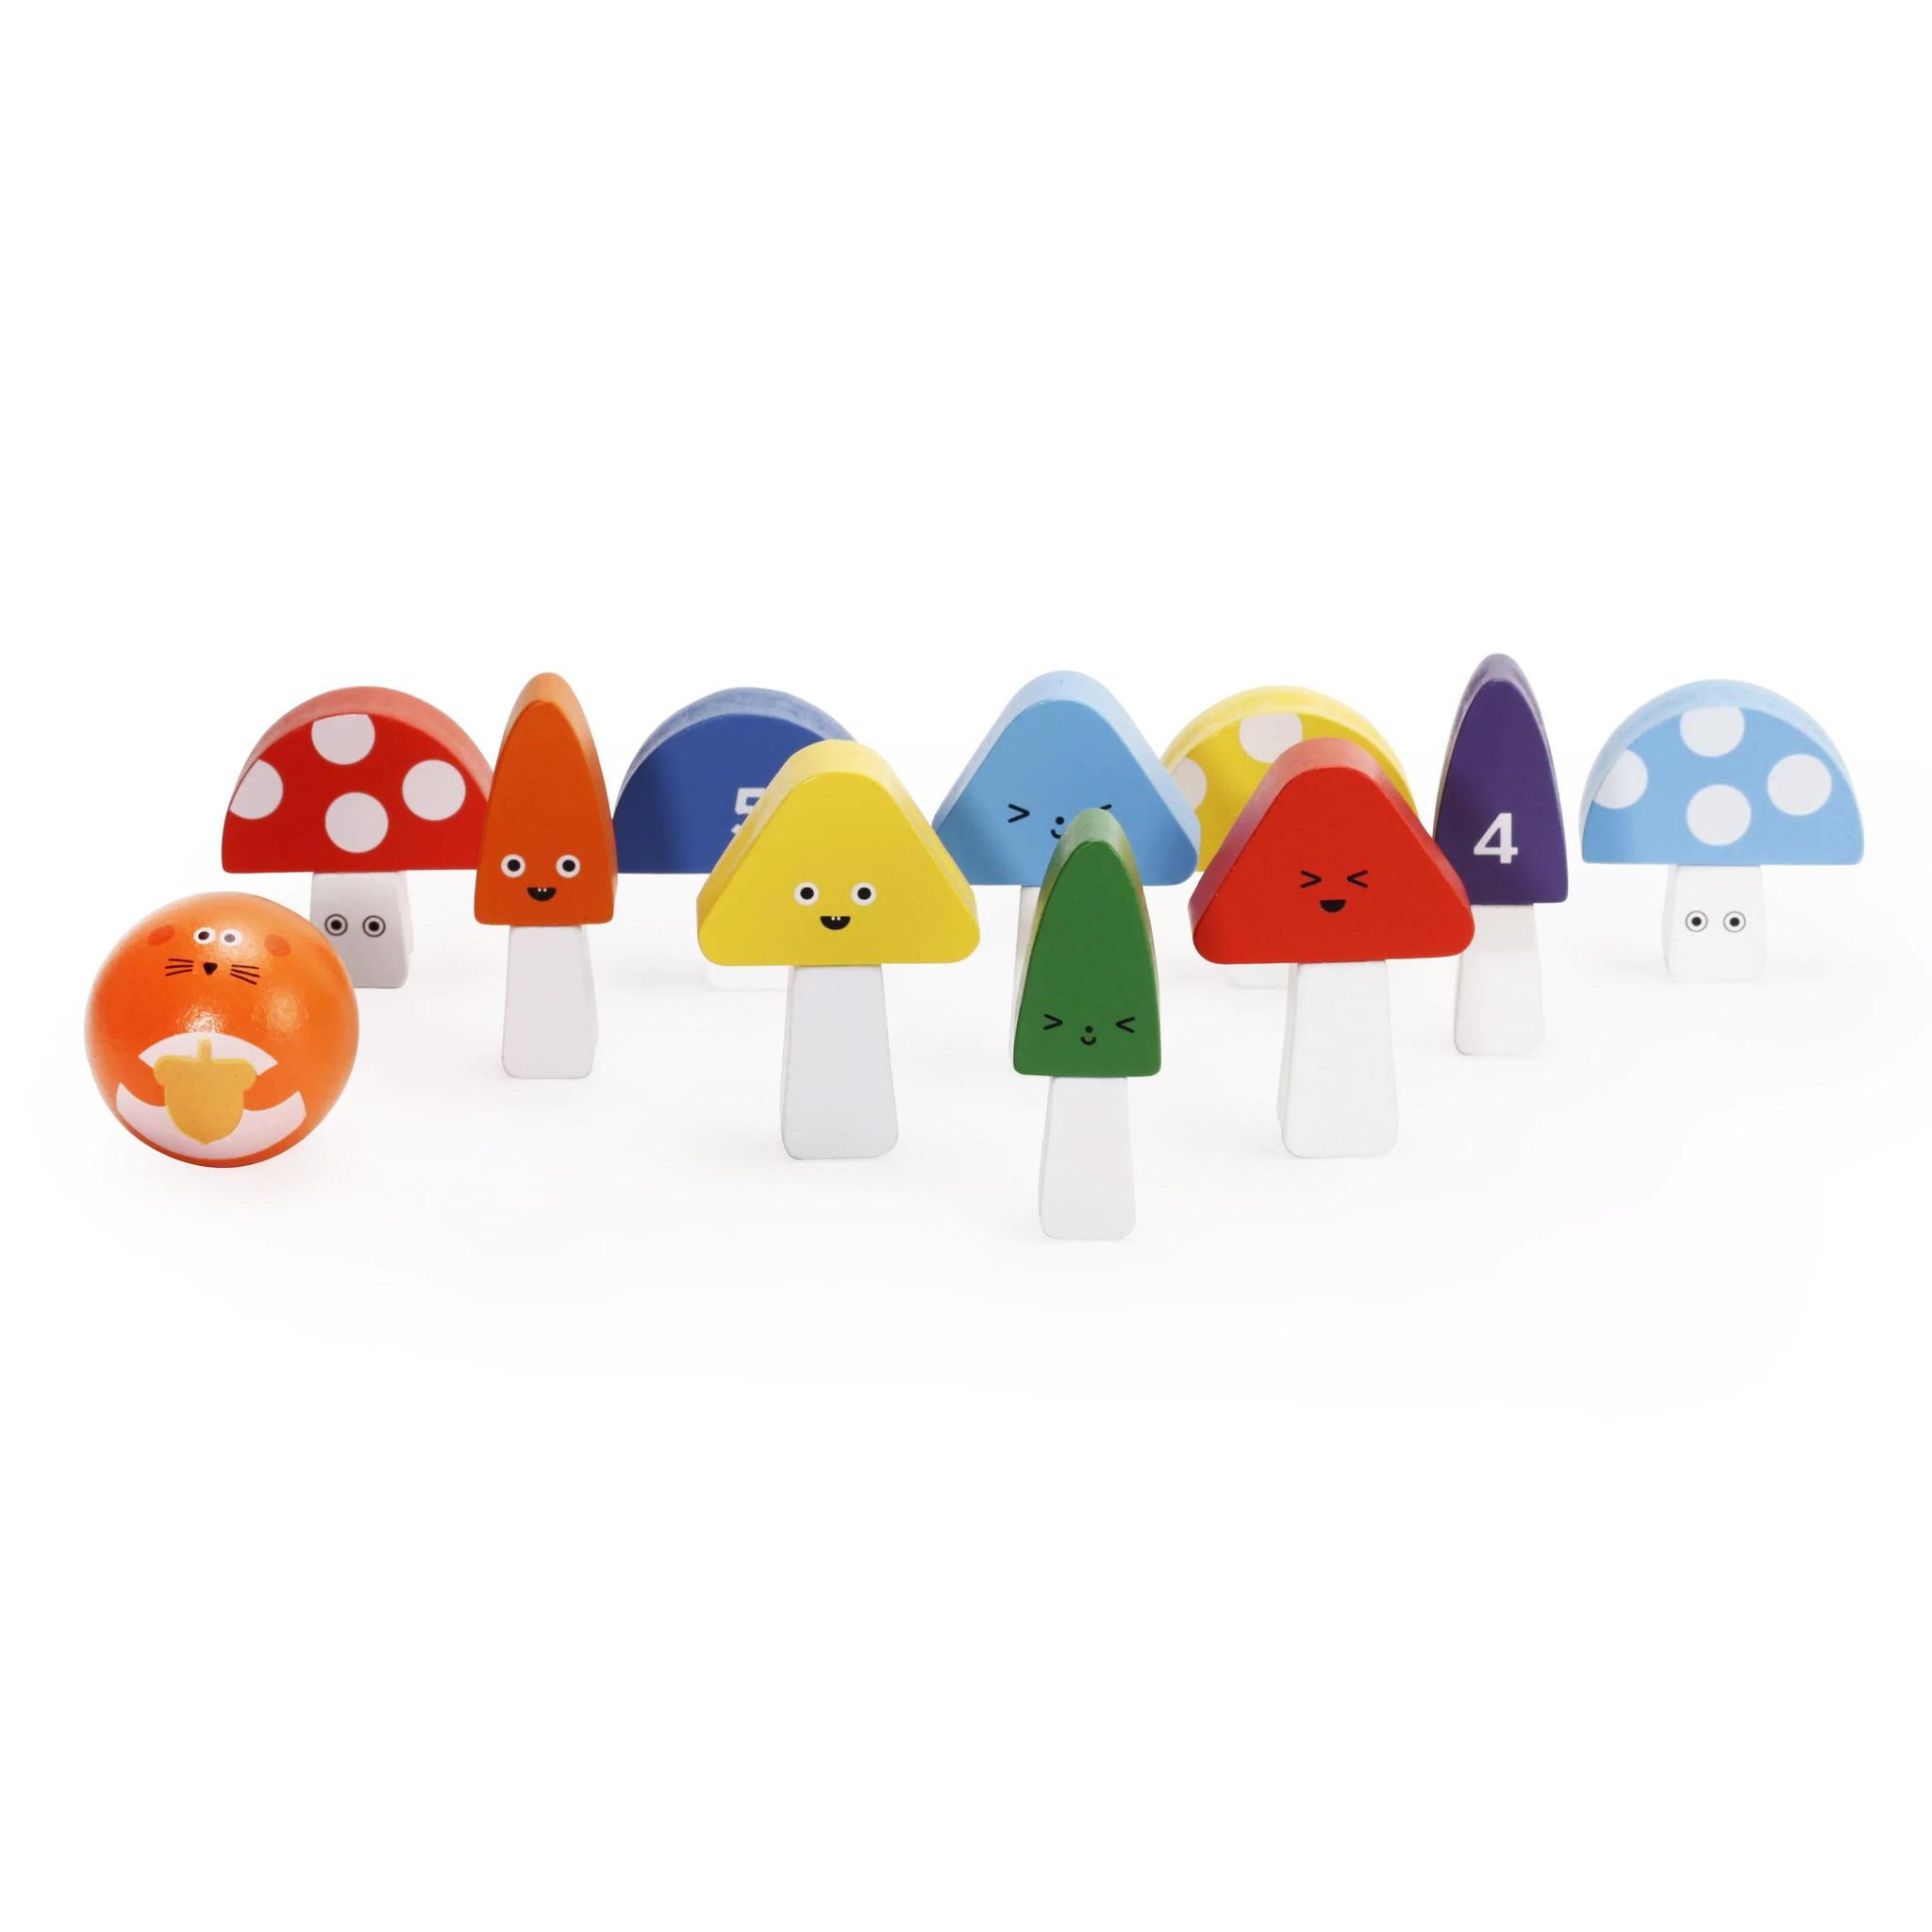  Mini Mushroom Bowling game